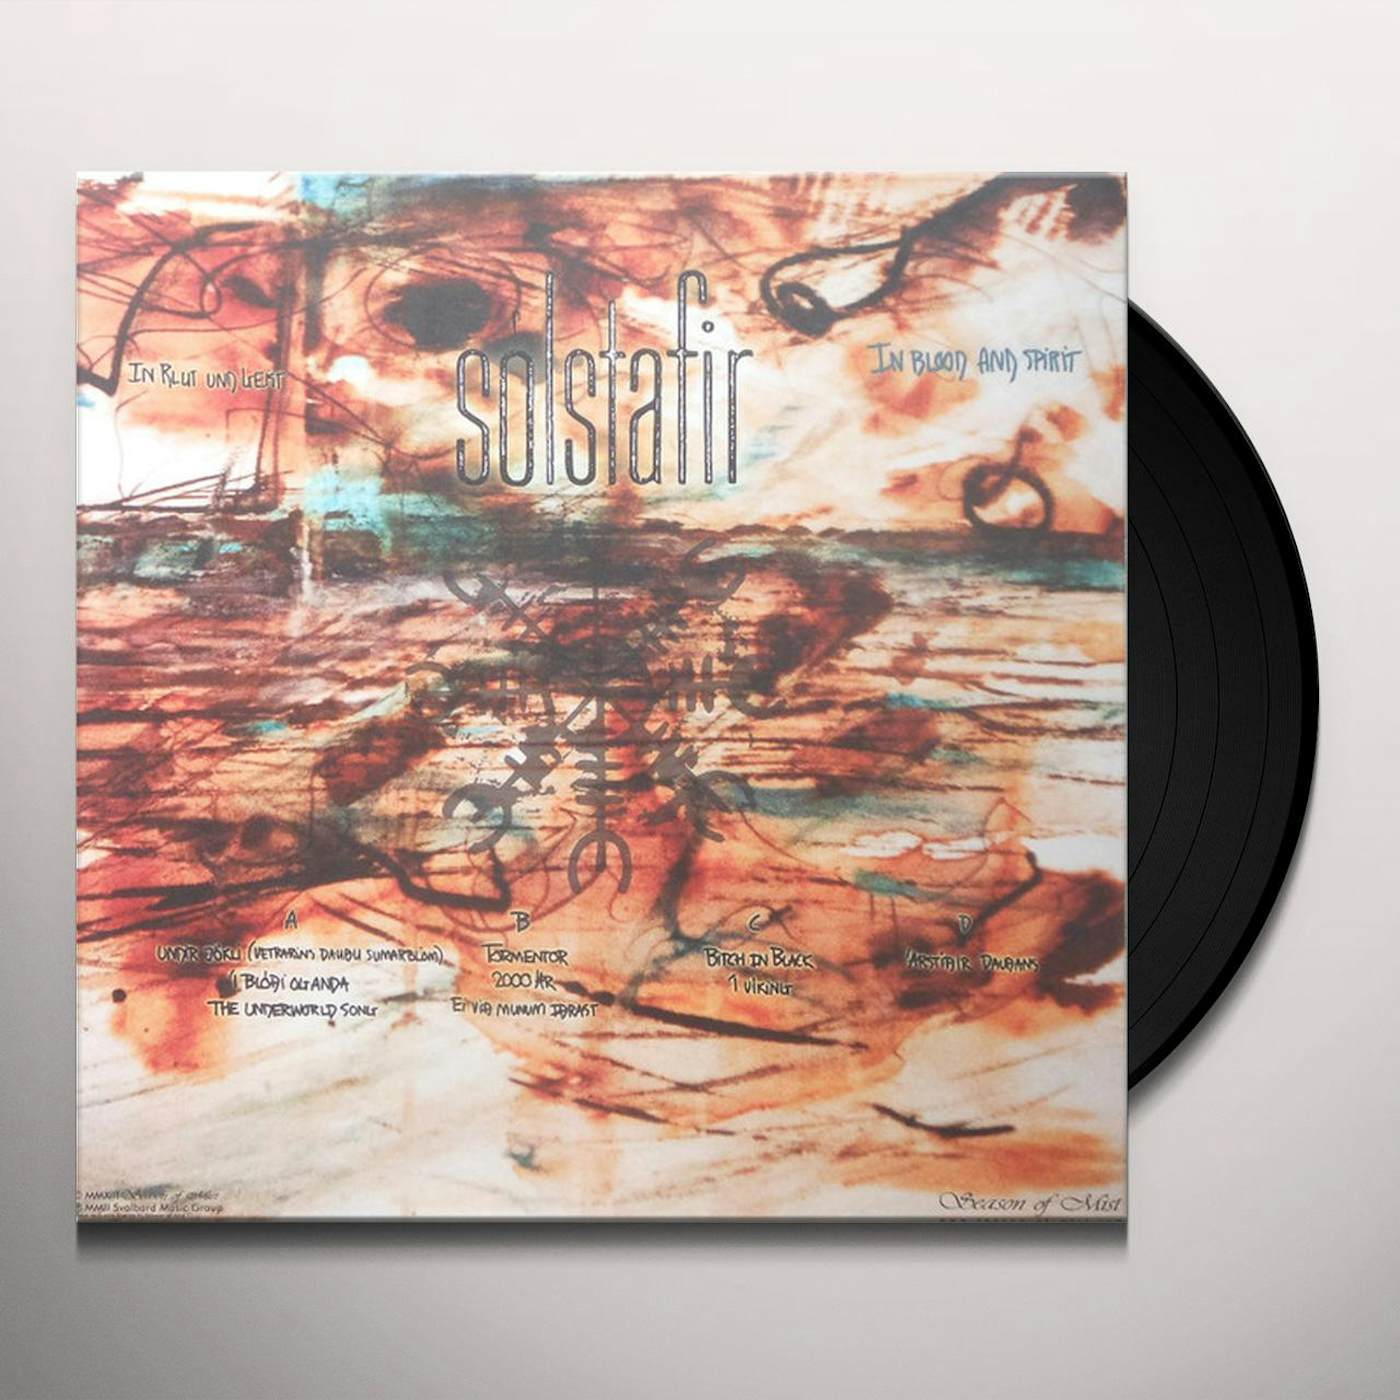 Sólstafir I BLODI OG ANDA (IN BLOOD & SPIRIT) Vinyl Record